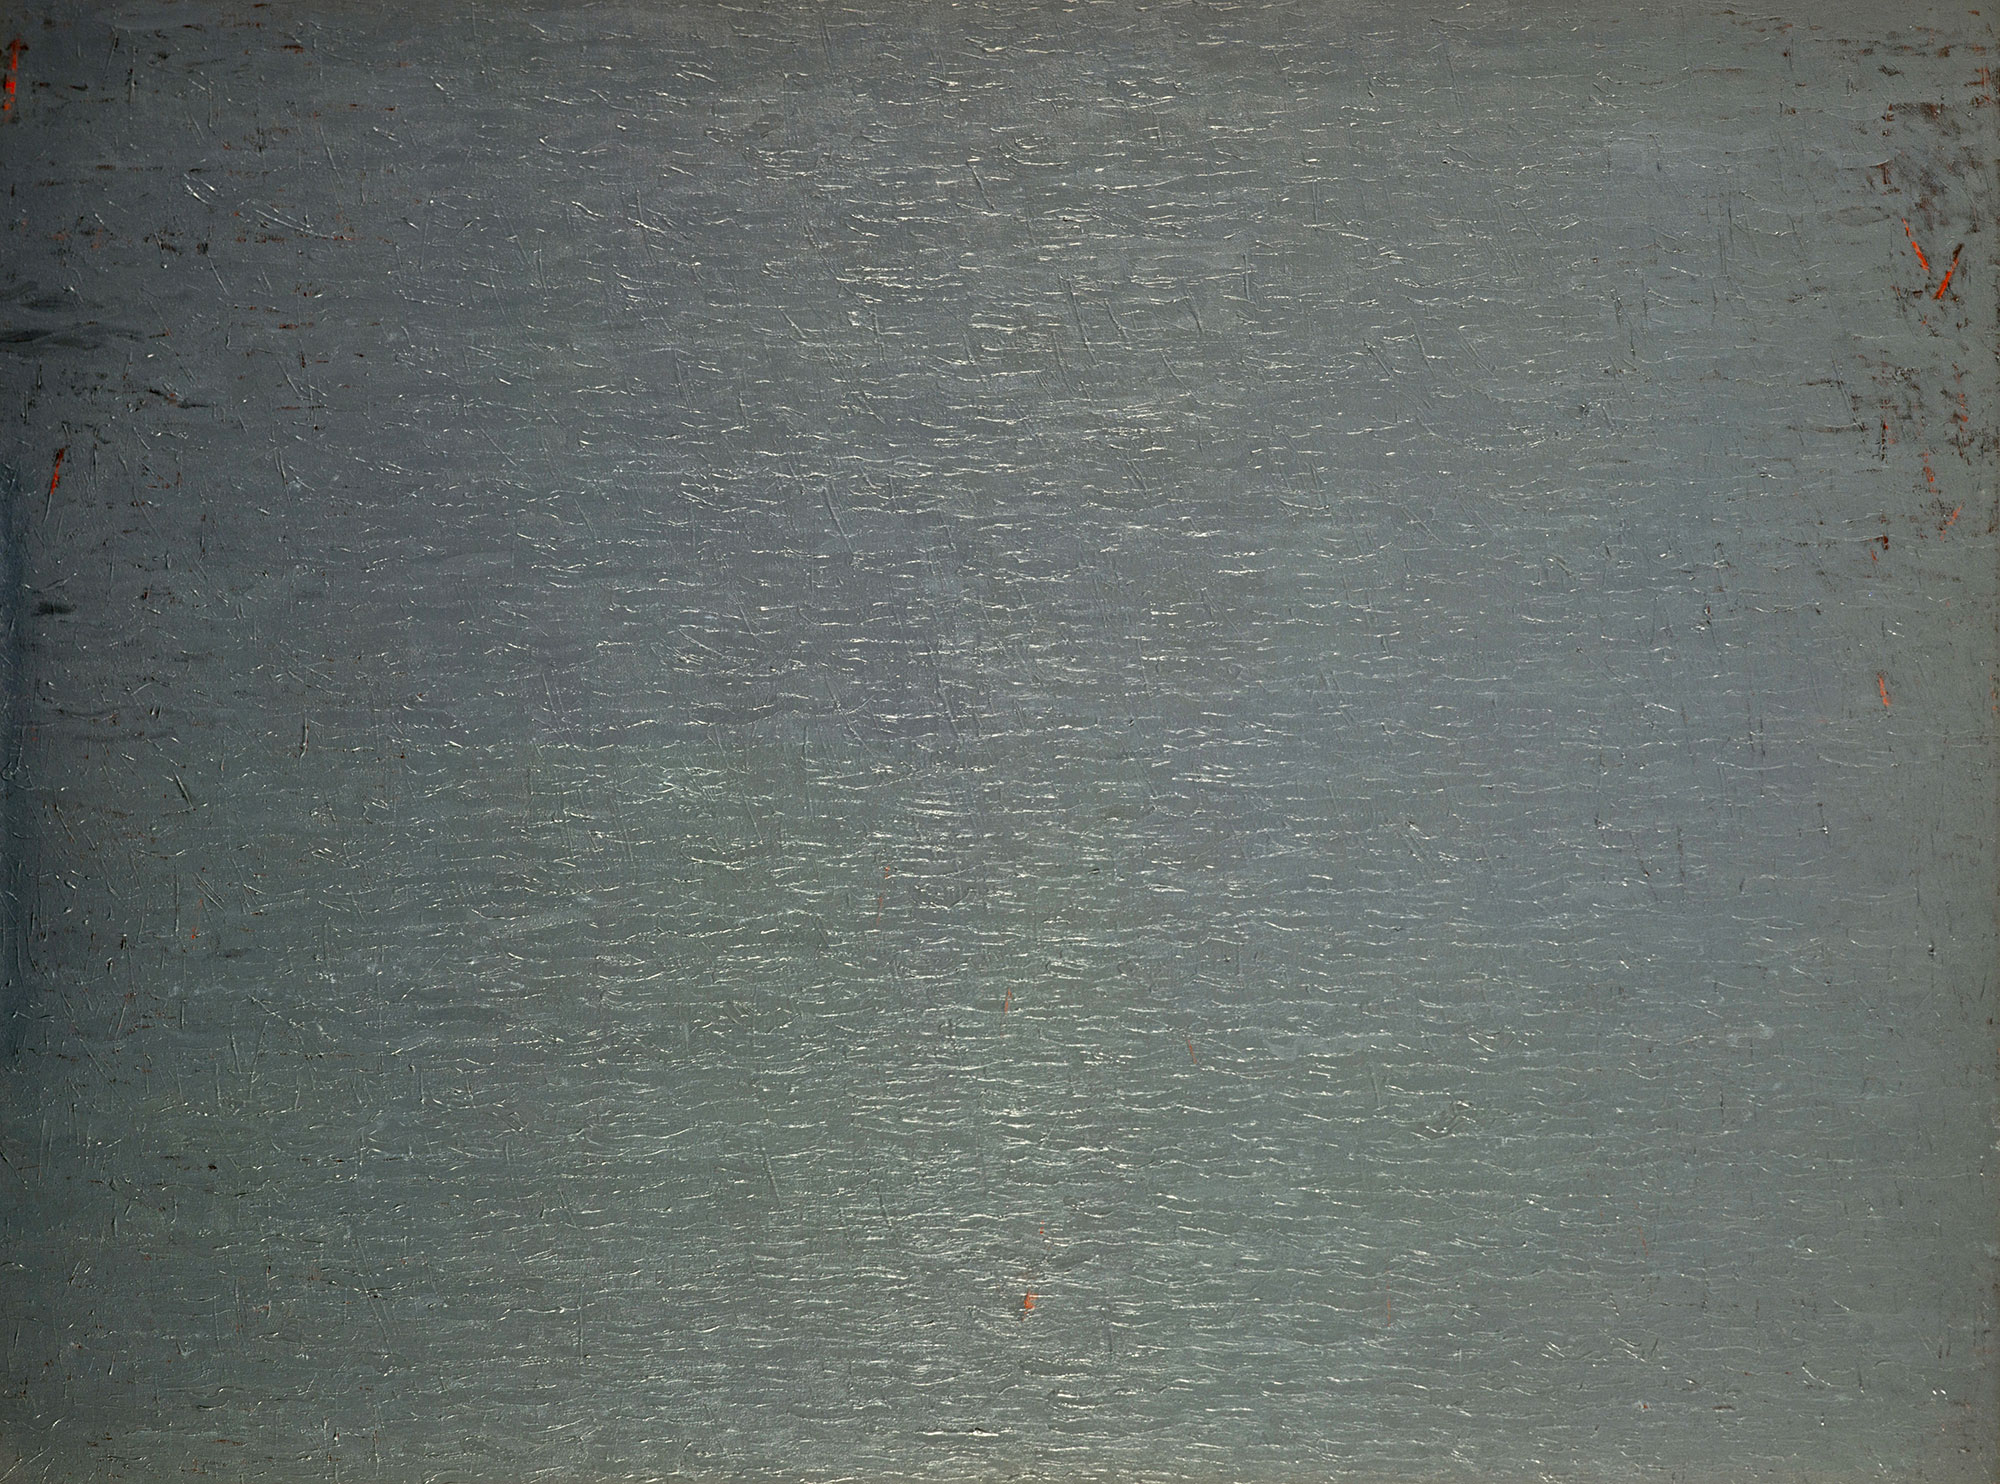 Kenneth Dingwall, Grey Surface, 1979, acrylic on canvas, 160cm x 214cm